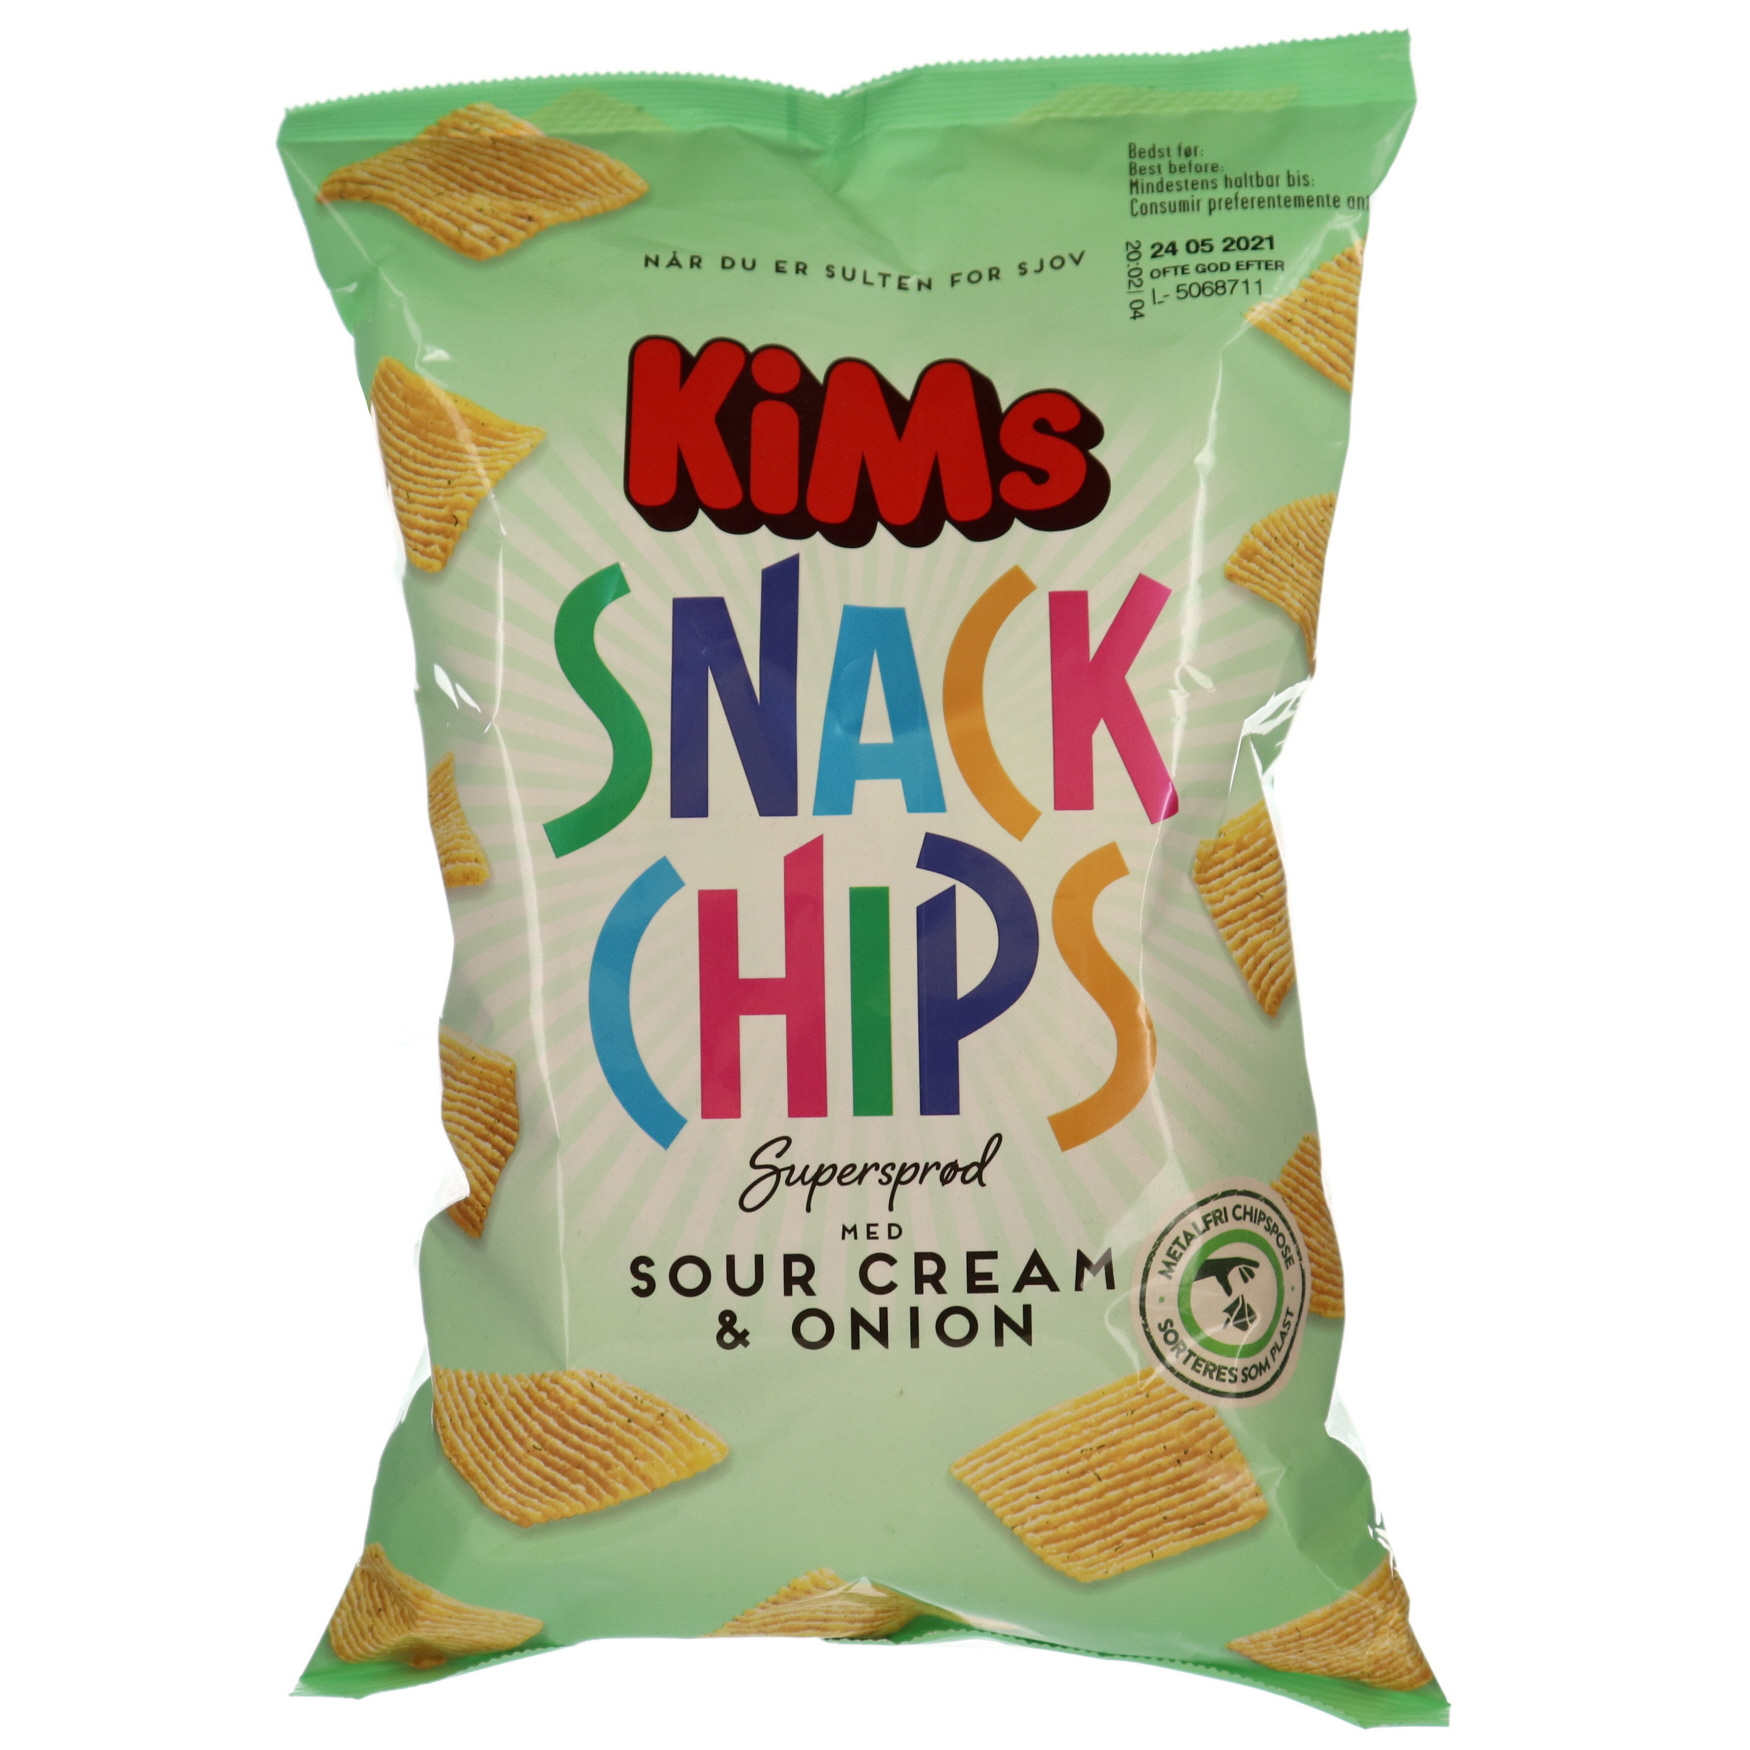 Forblive Jeg var overrasket projektor KiMs Snack Chips Sour Cream & Onion 160 g. - Grænsehandel til billige priser